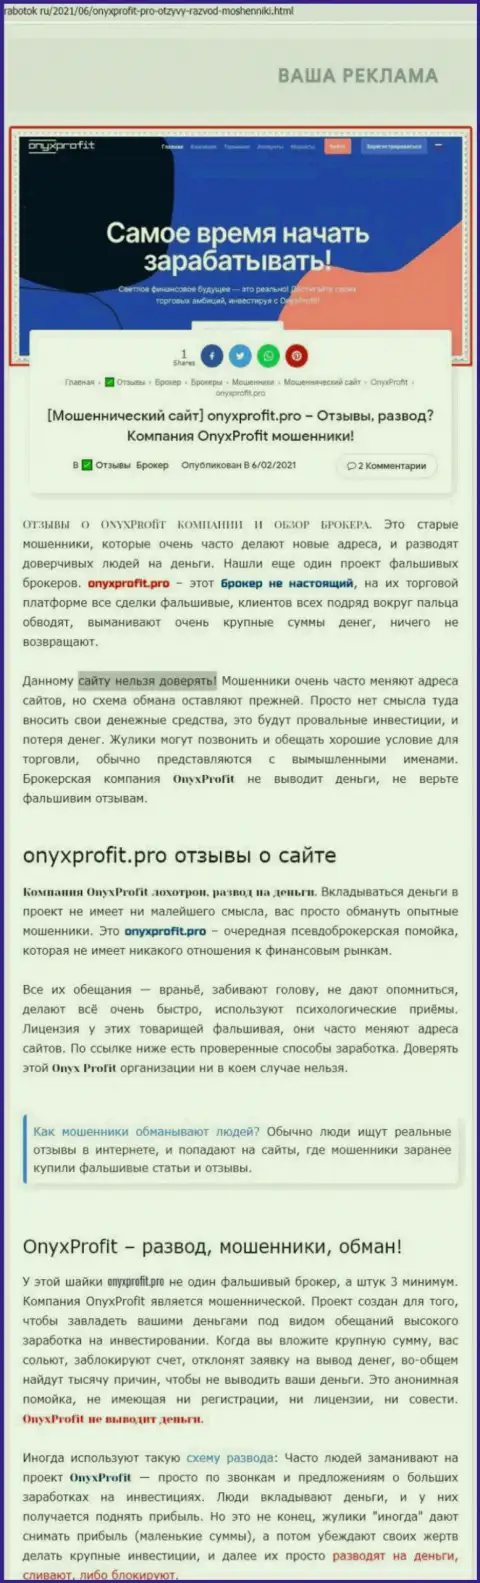 Уловки от компании Onyx Profit, обзор противозаконных действий